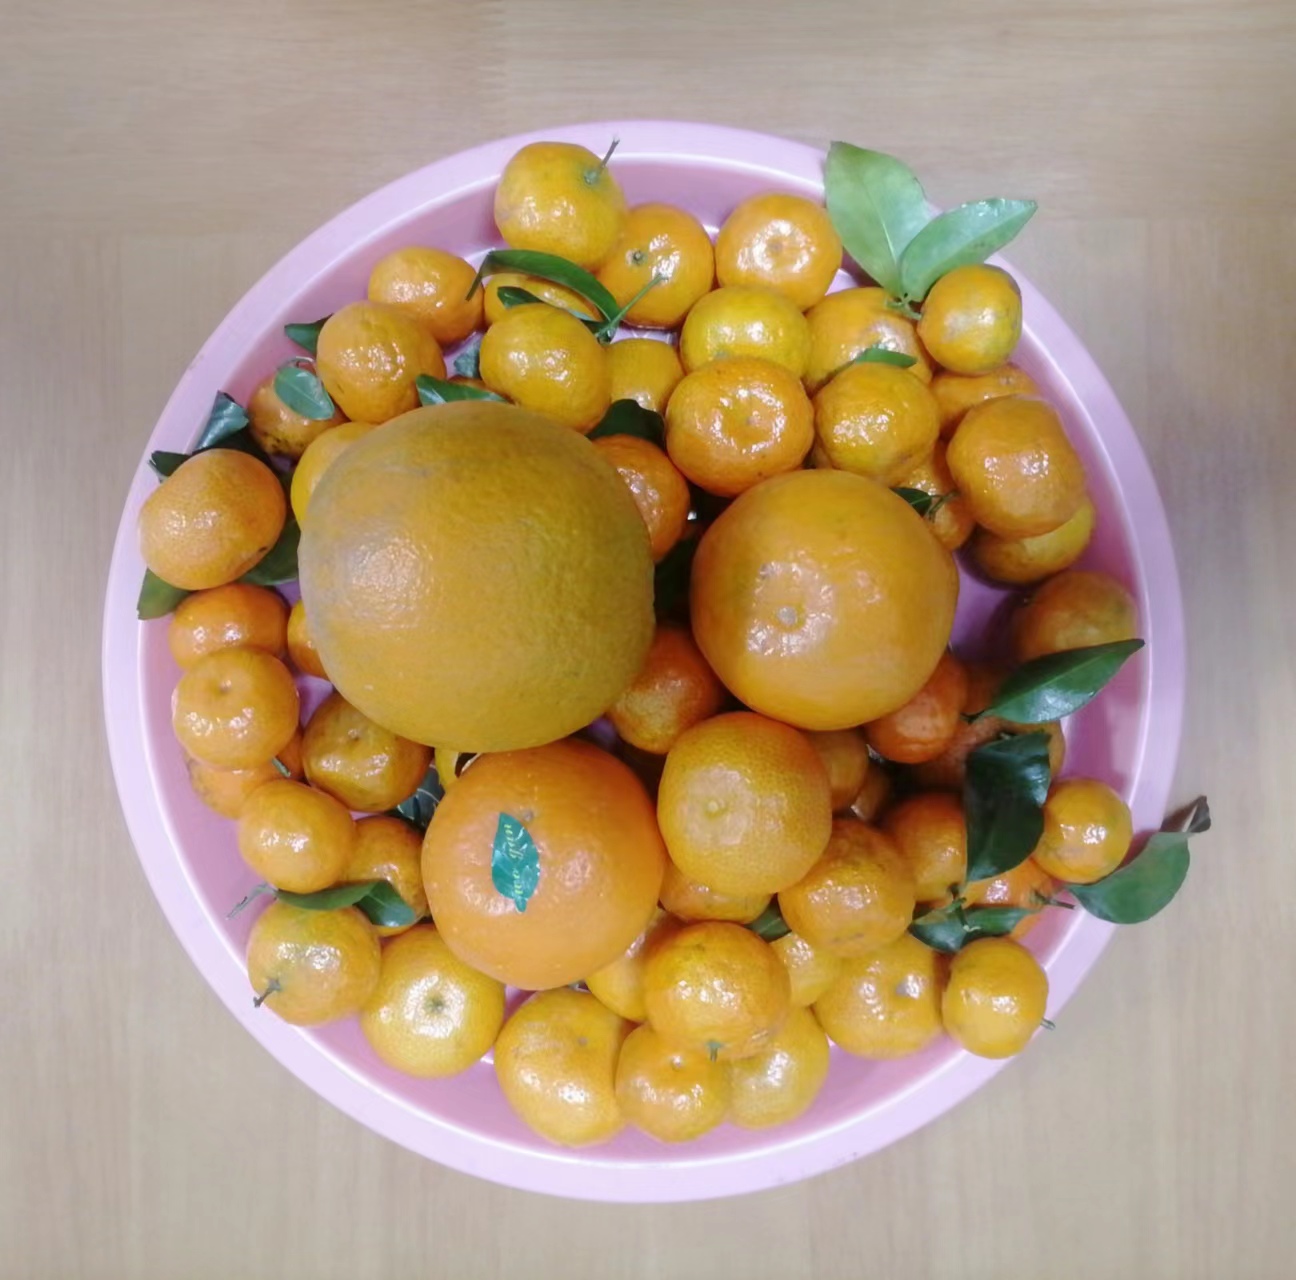 砂糖橘、香妃柑、橙子拼盘